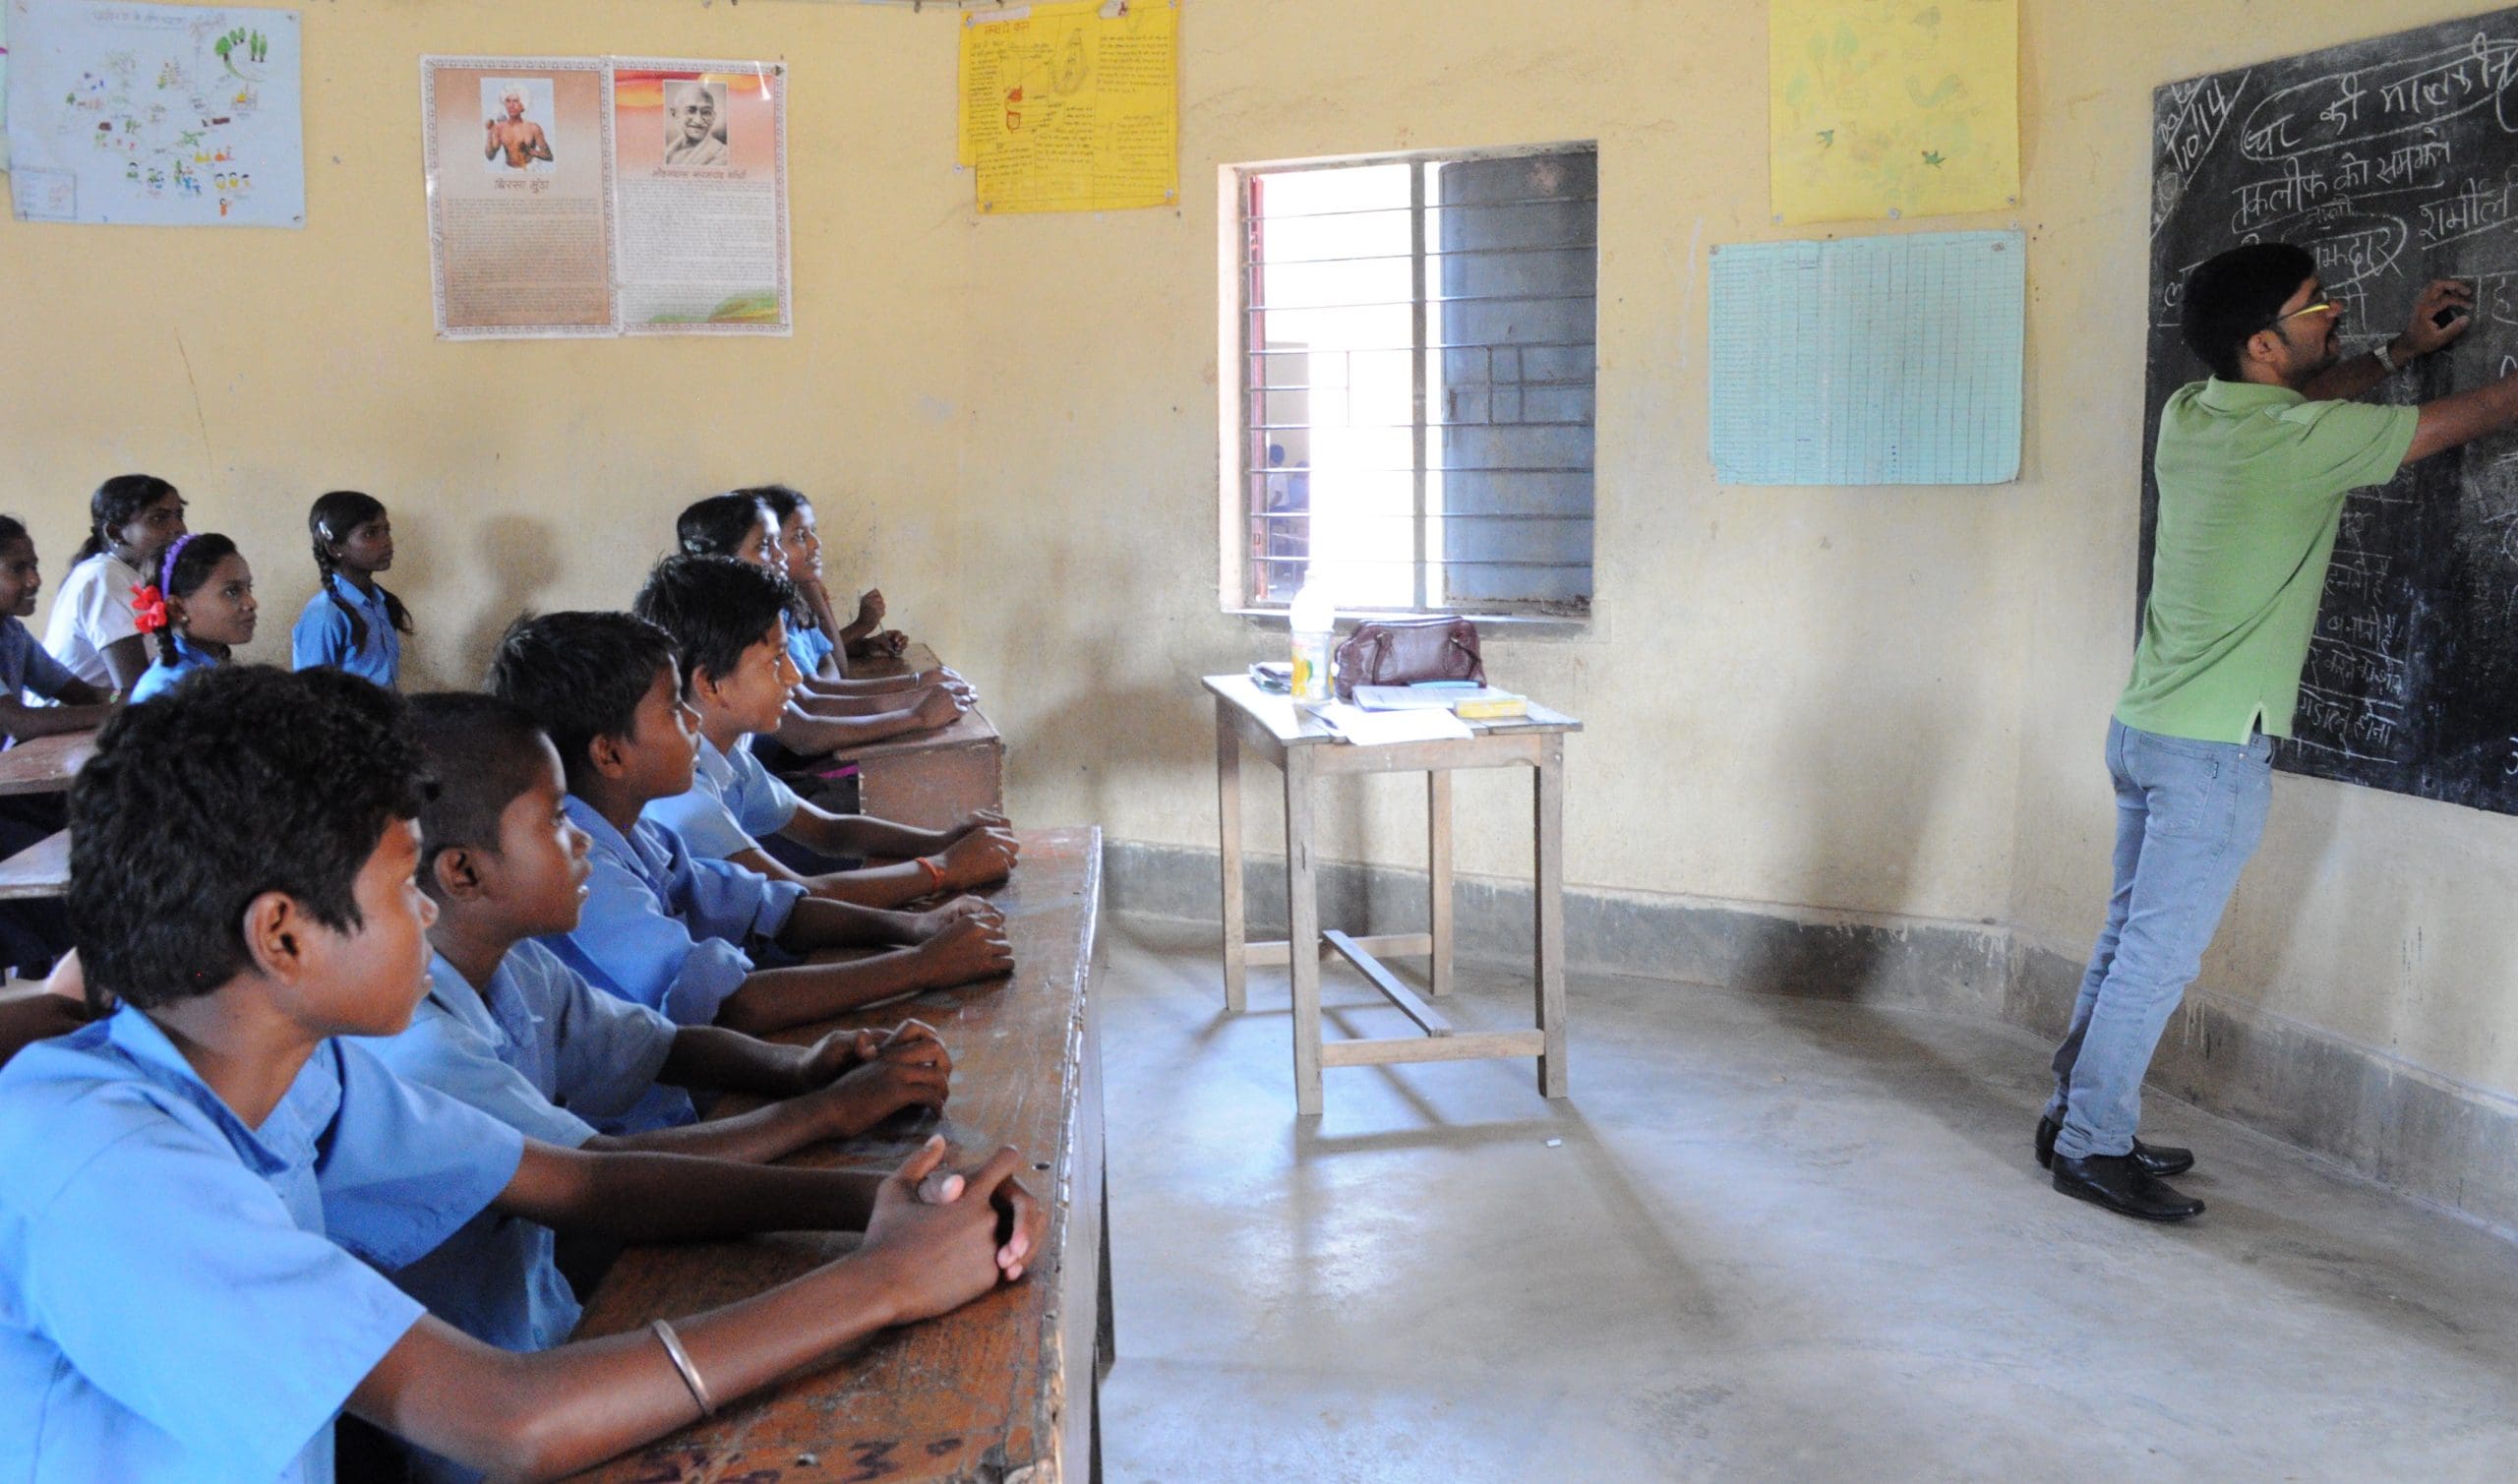 Gender Equity Movement in Schools (India)